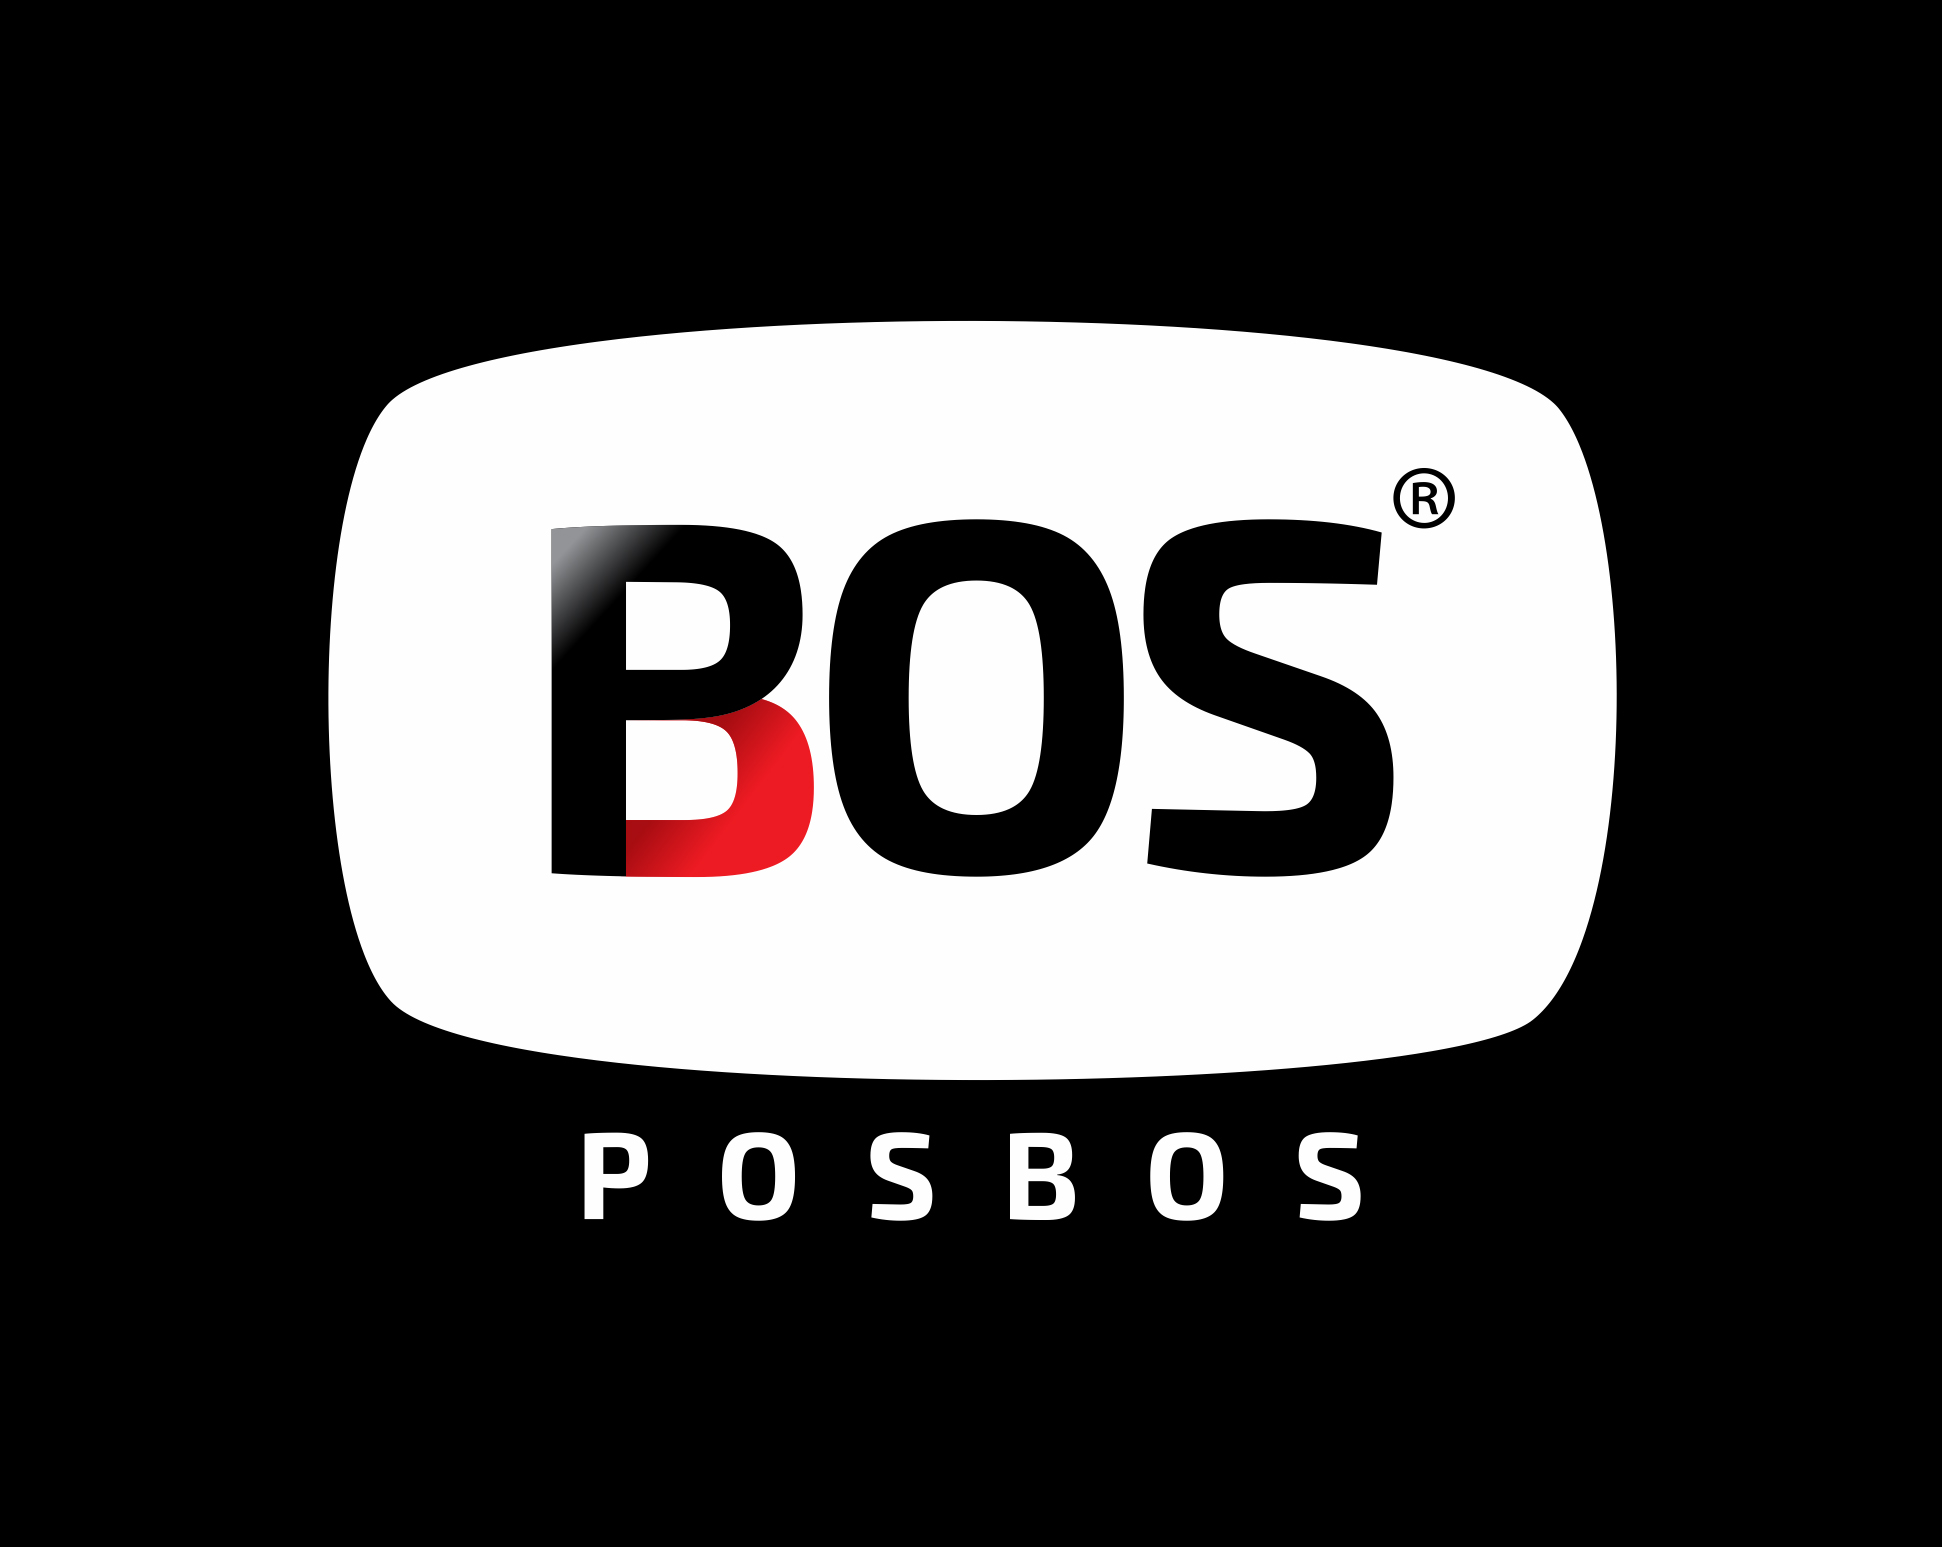 AD Agency Dubai client - POSBOS